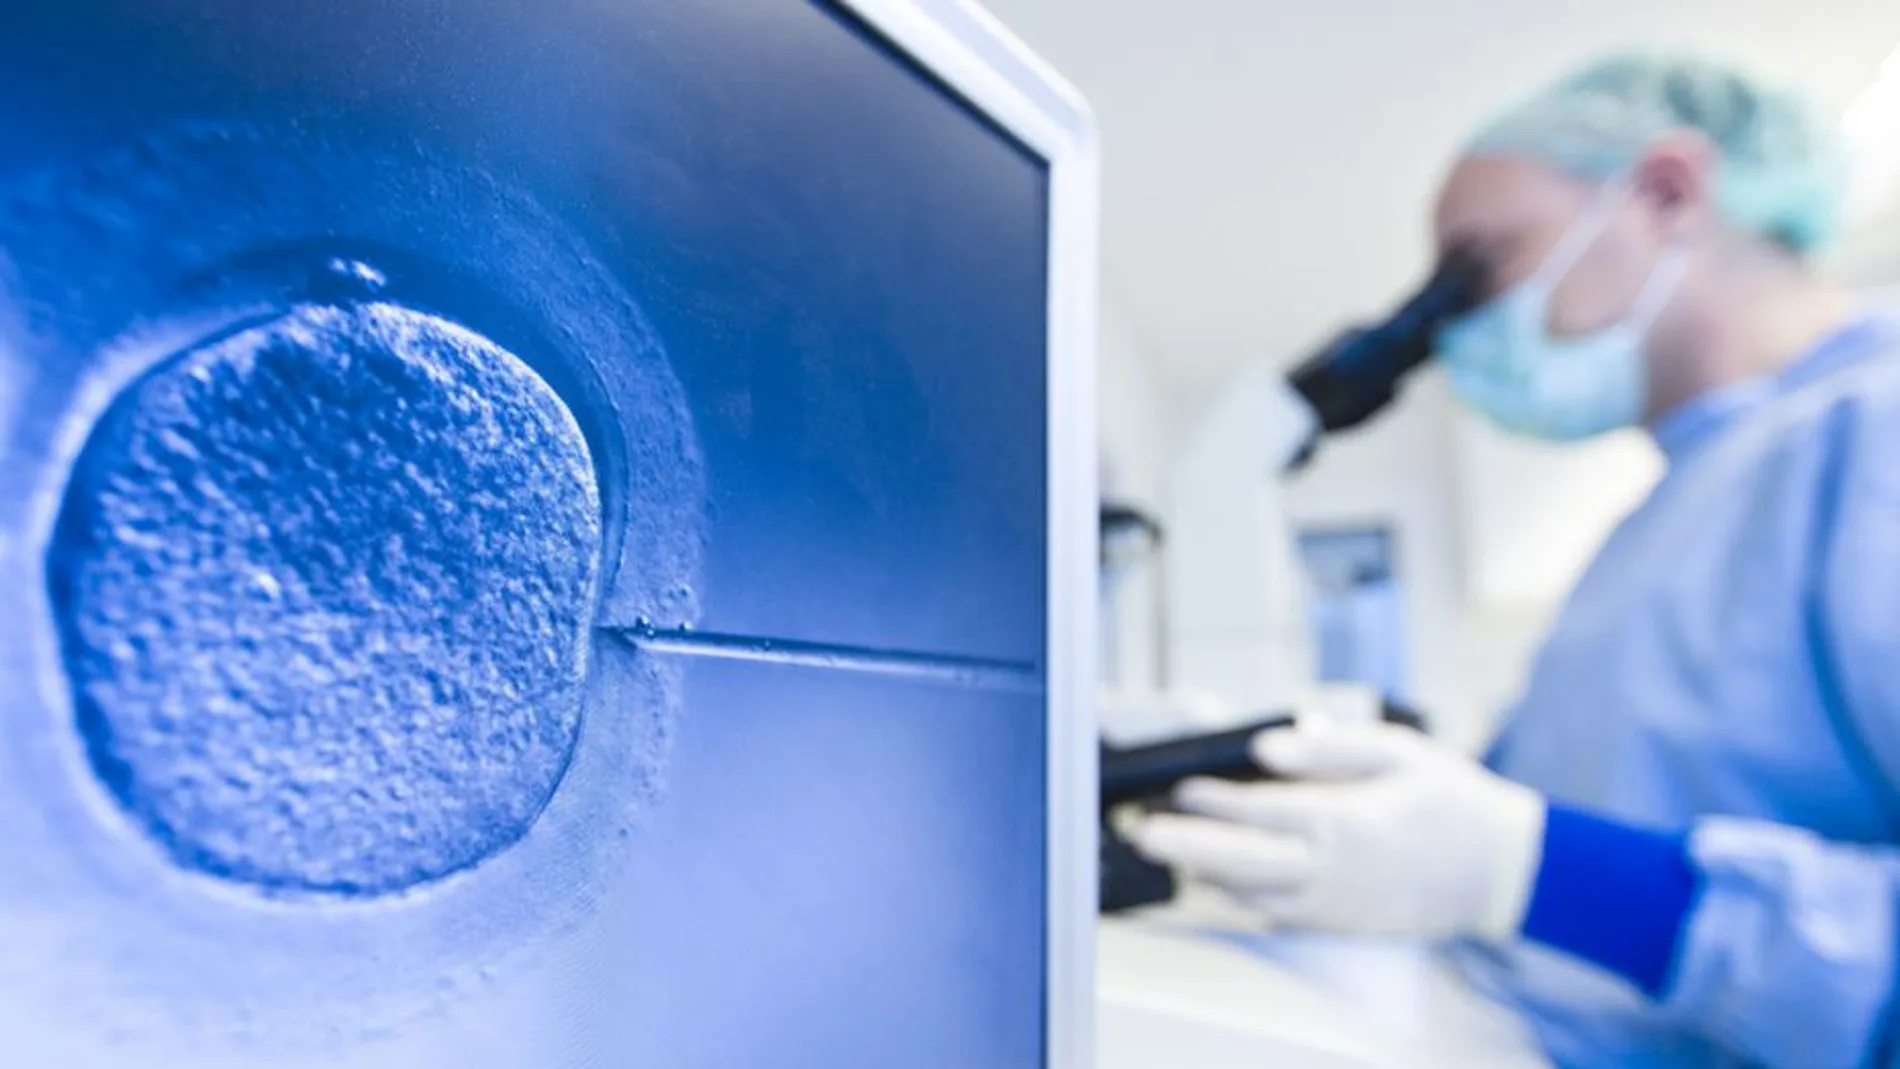 Reino Unido abre la puerta a la investigación genética de embriones humanos